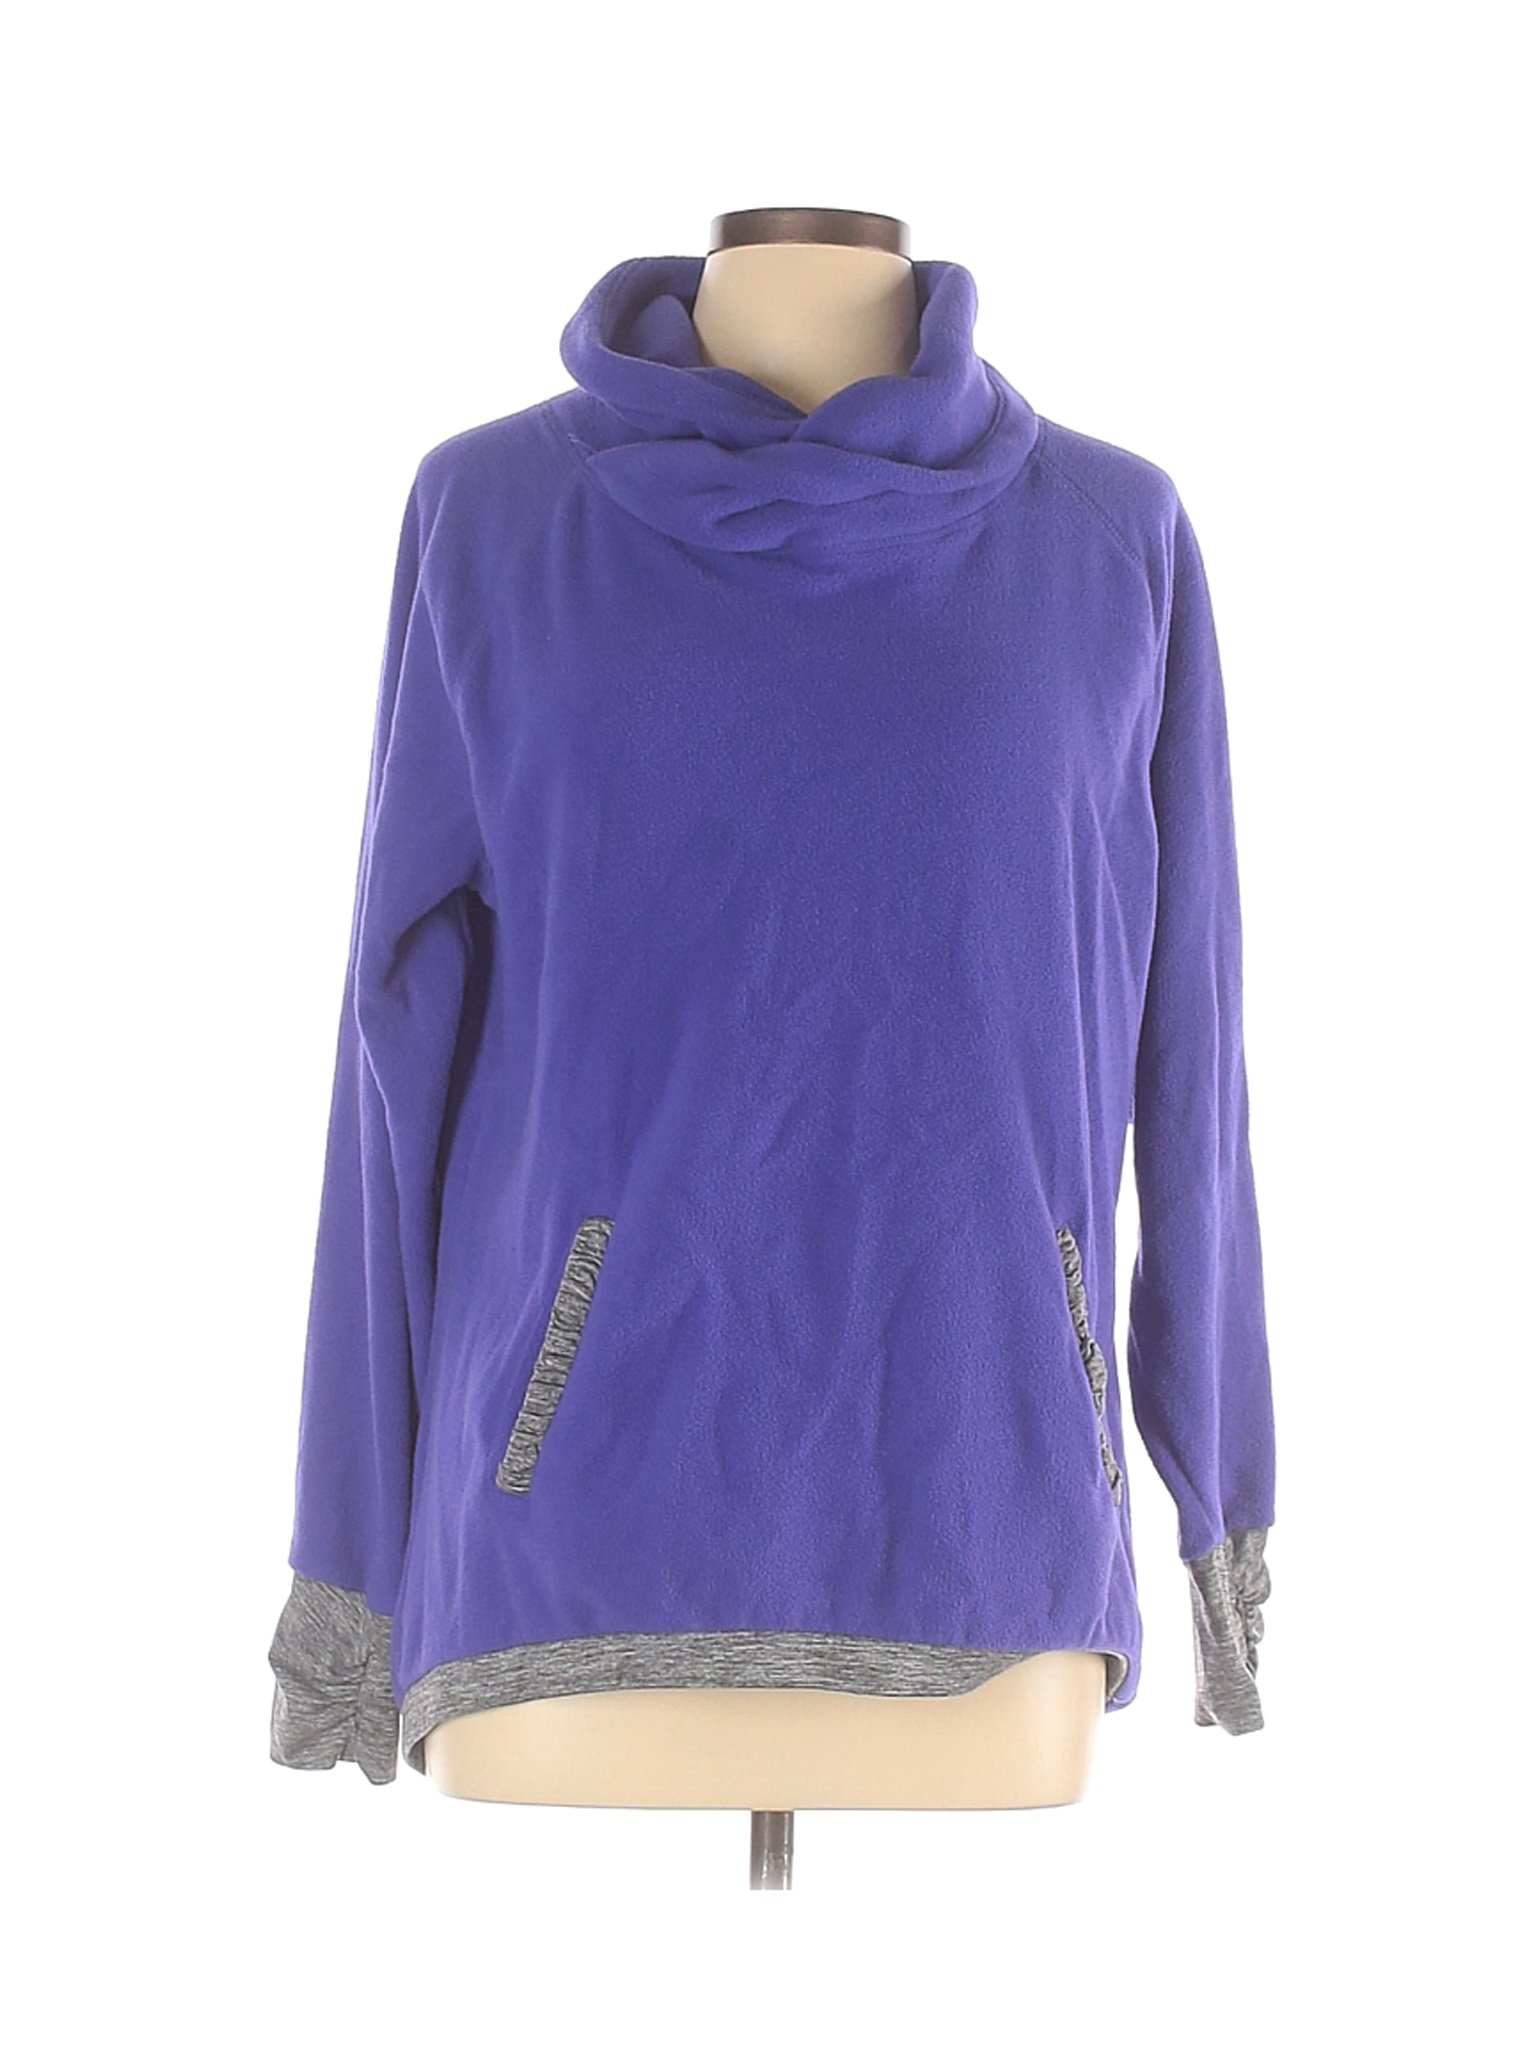 Old Navy Women Purple Fleece L | eBay